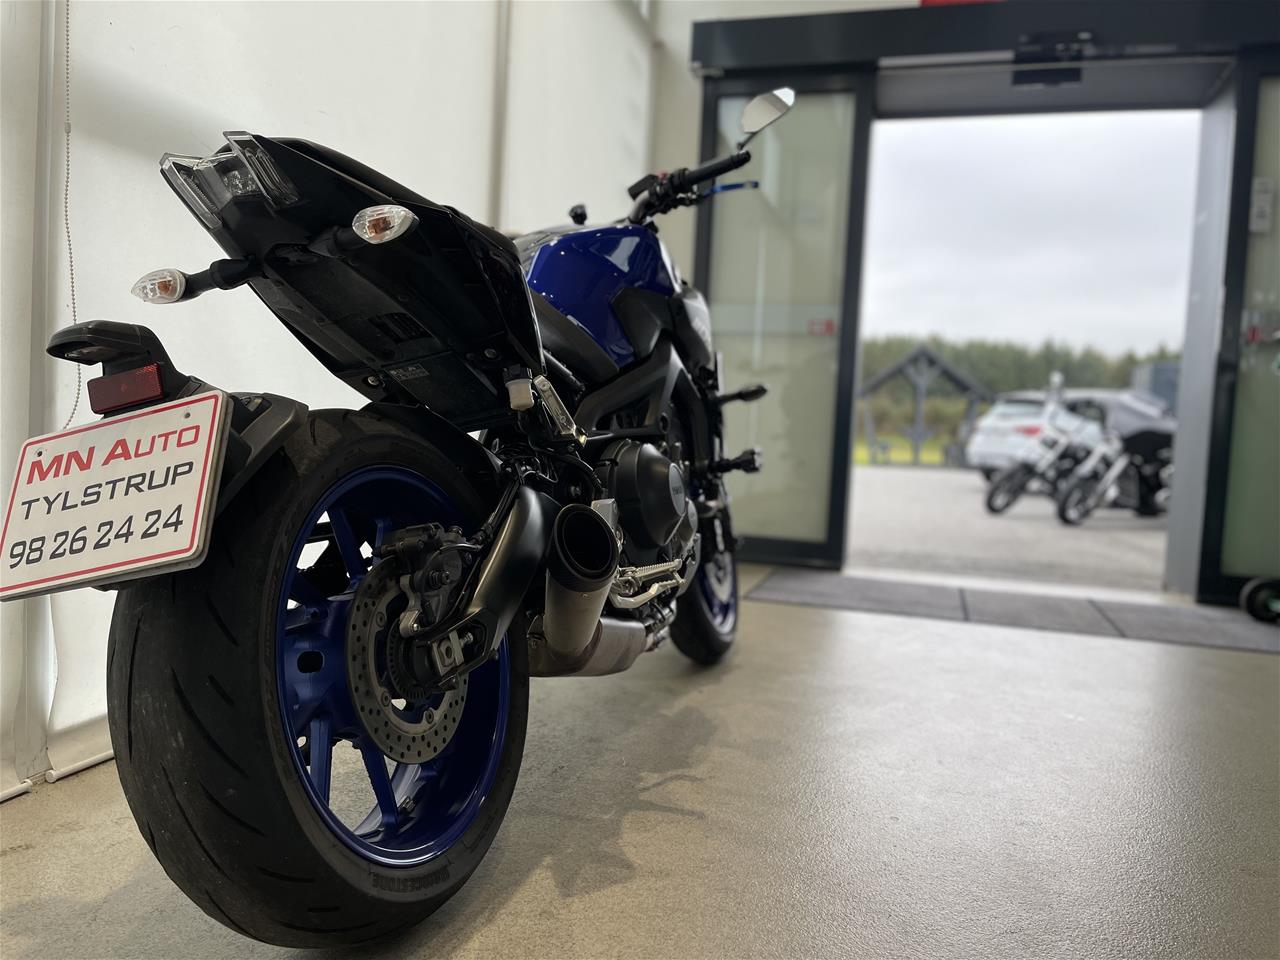 Yamaha - Motorcykler - Se MC'er til Salg Køb Brugt Motorcykel MN Auto